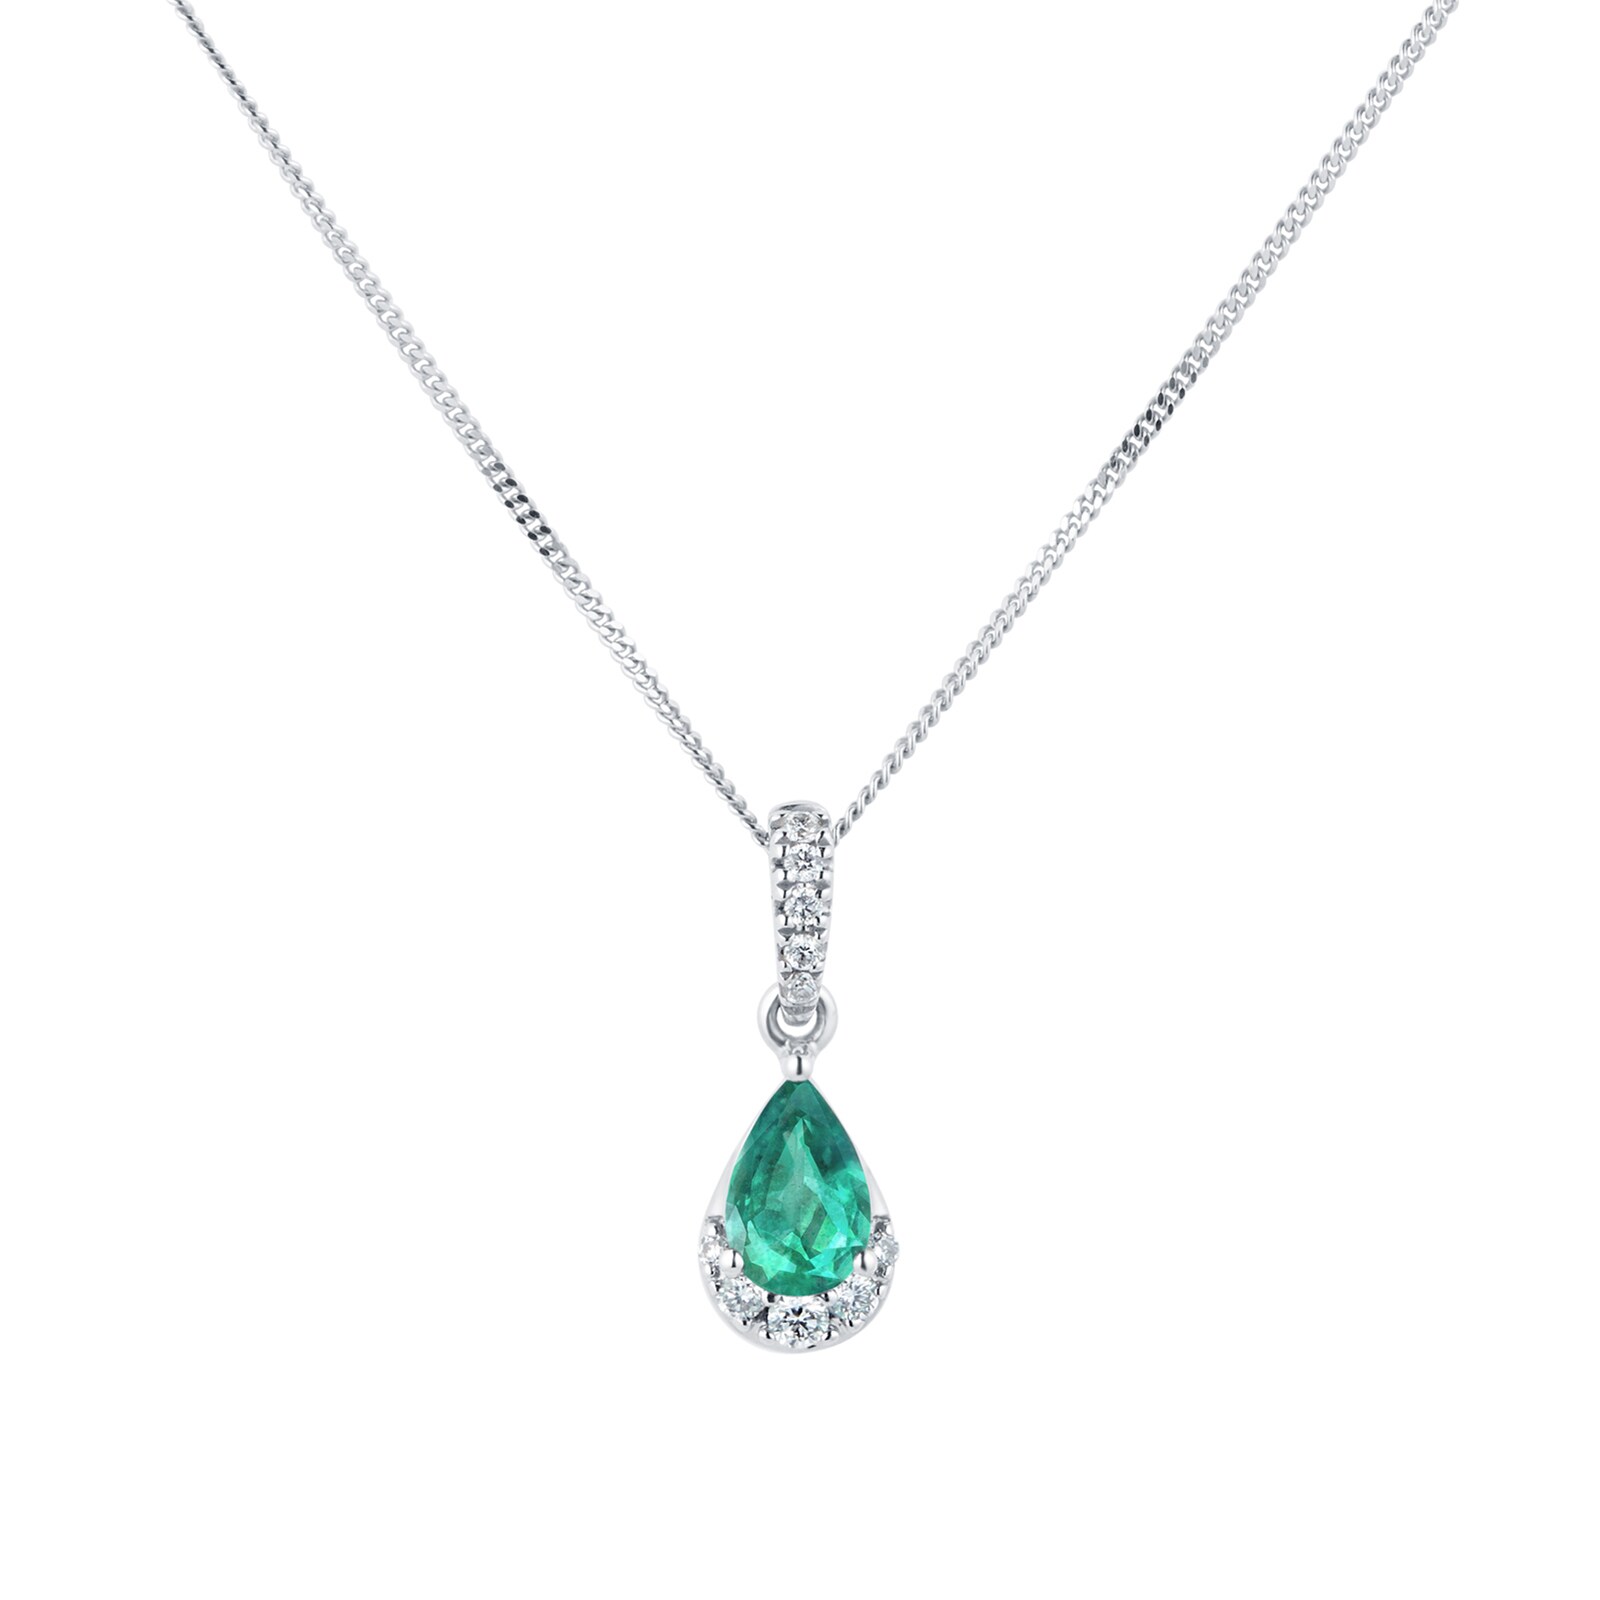 9ct White Gold Pear Cut Emerald & Diamond Pendant